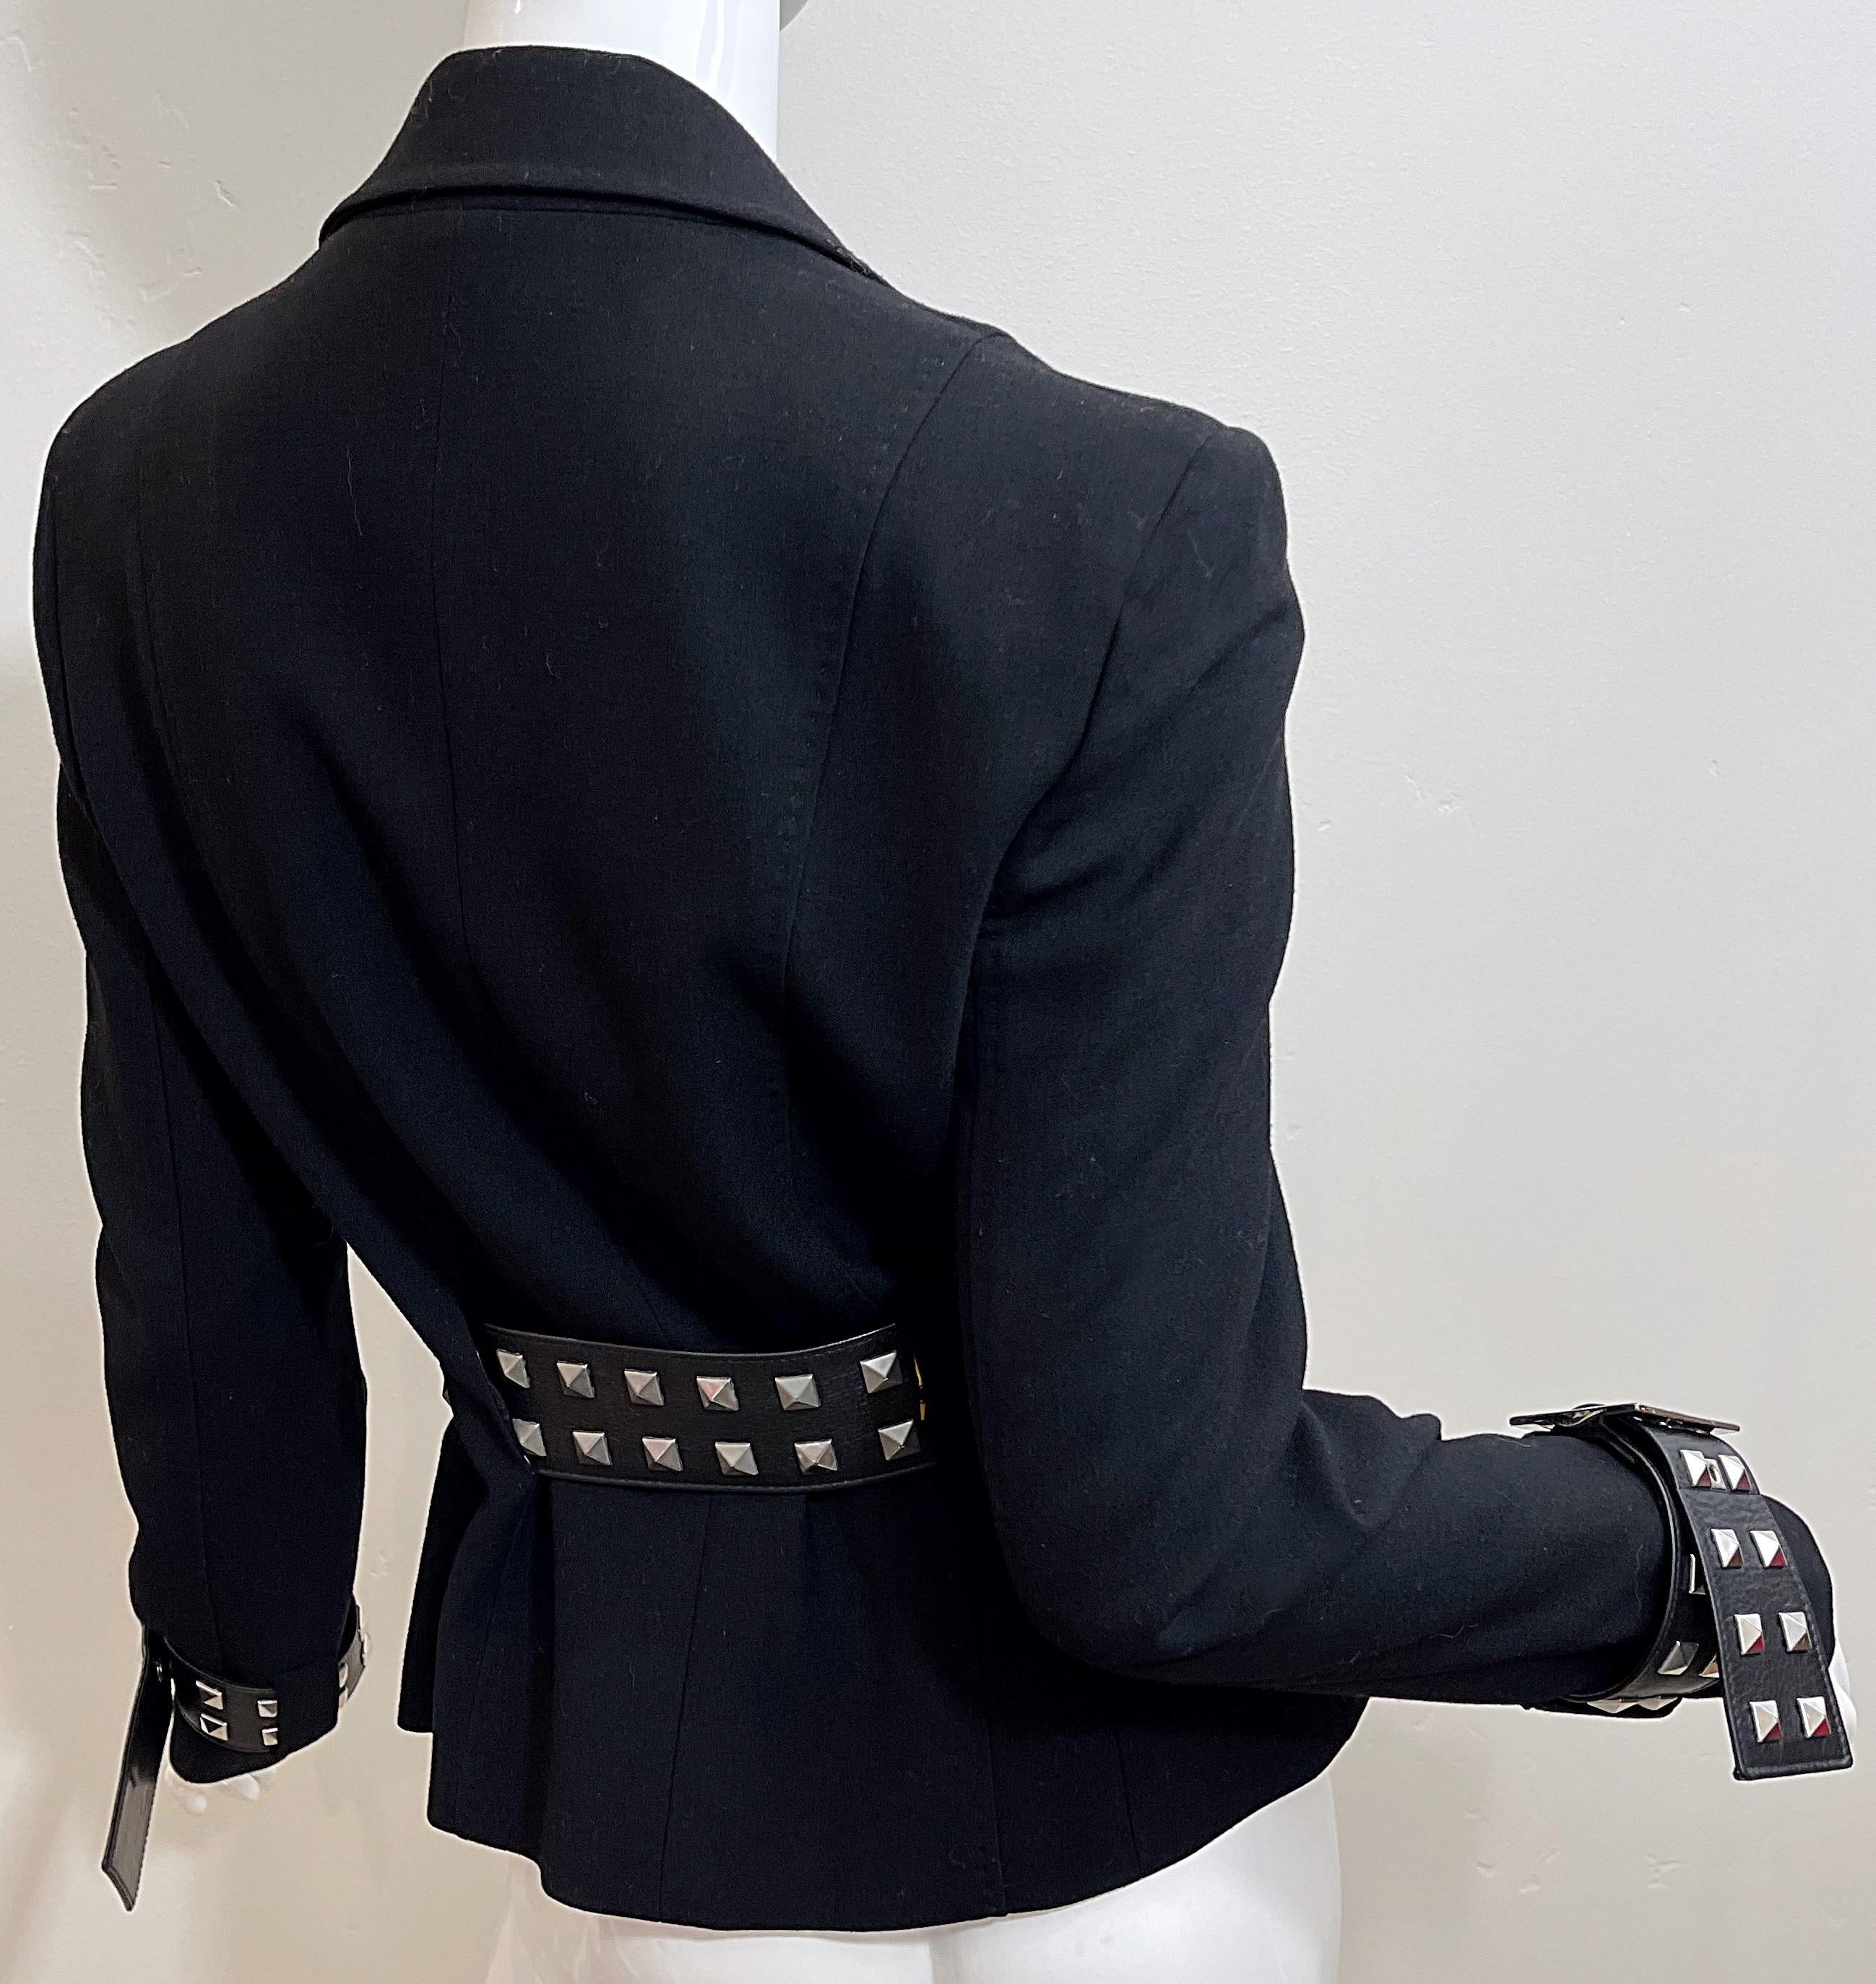 Gianni Versace 2000s Y2K Bondage Inspired Size 44 / 8 Belted Blazer Jacket 1